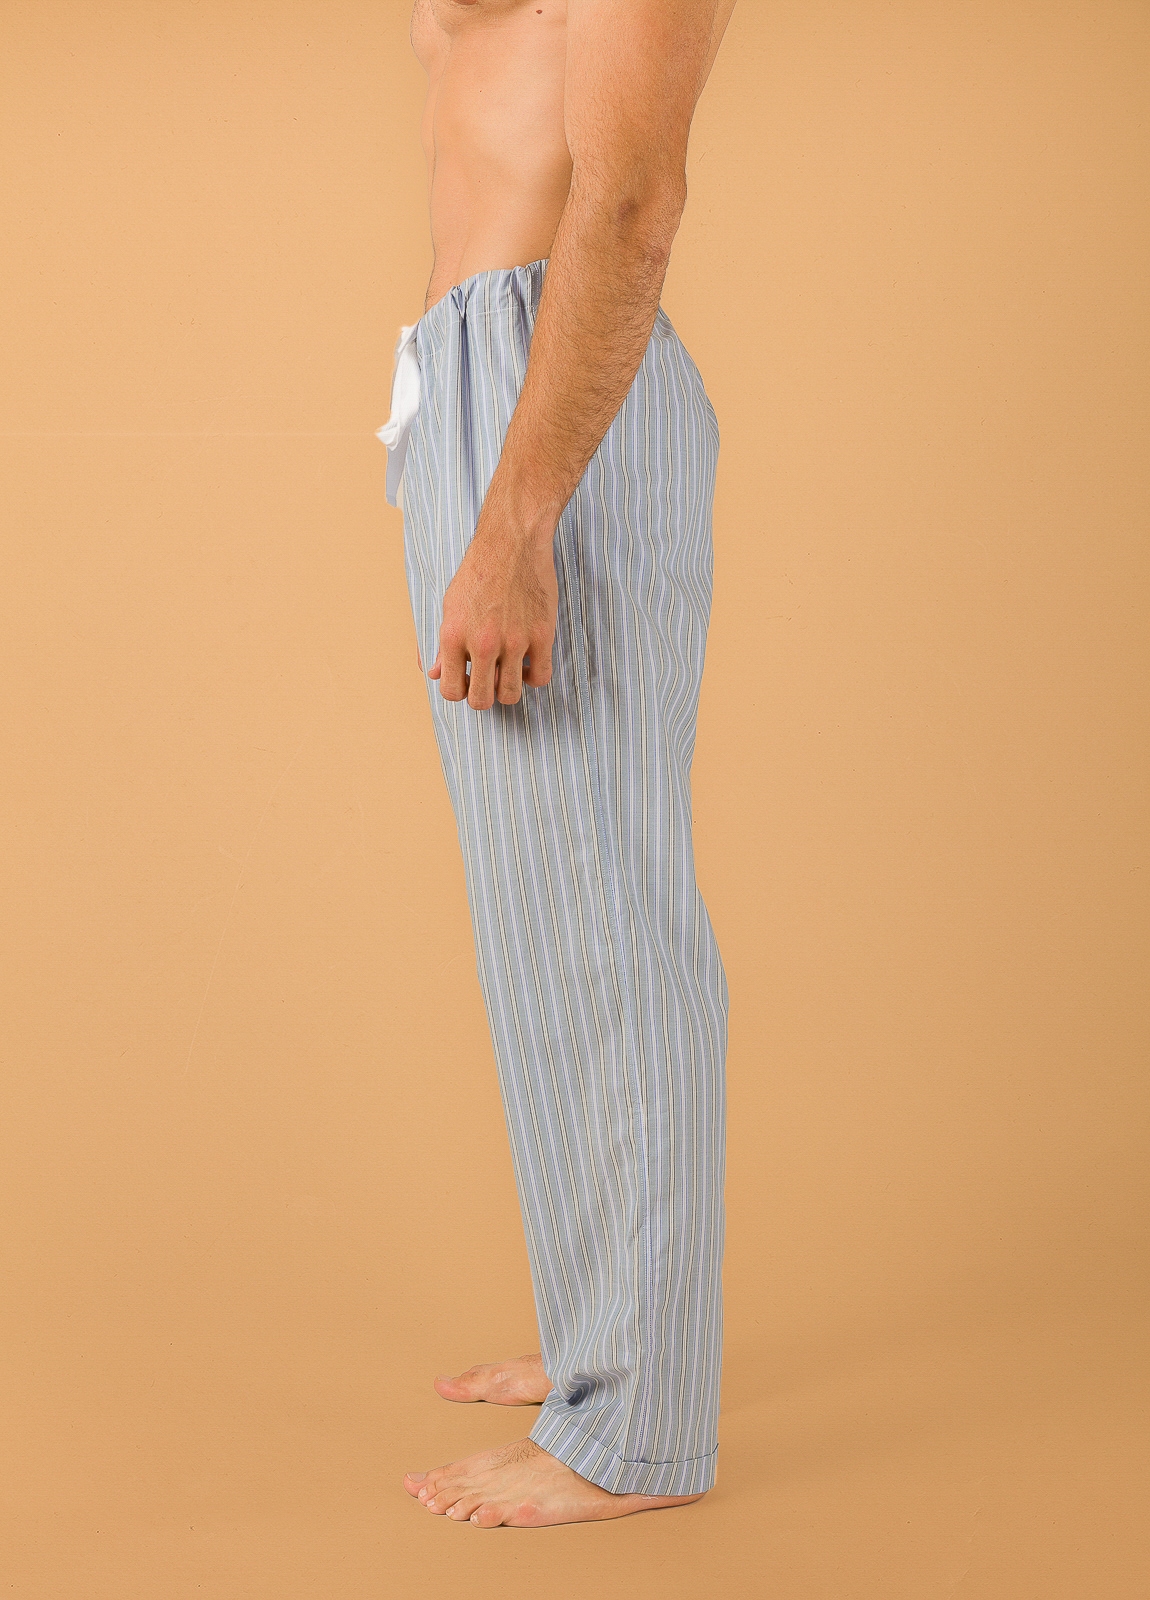 Pantalón largo de Pijama FUREST COLECCIÓN rayas azul y verde con funda incluida - Ítem2